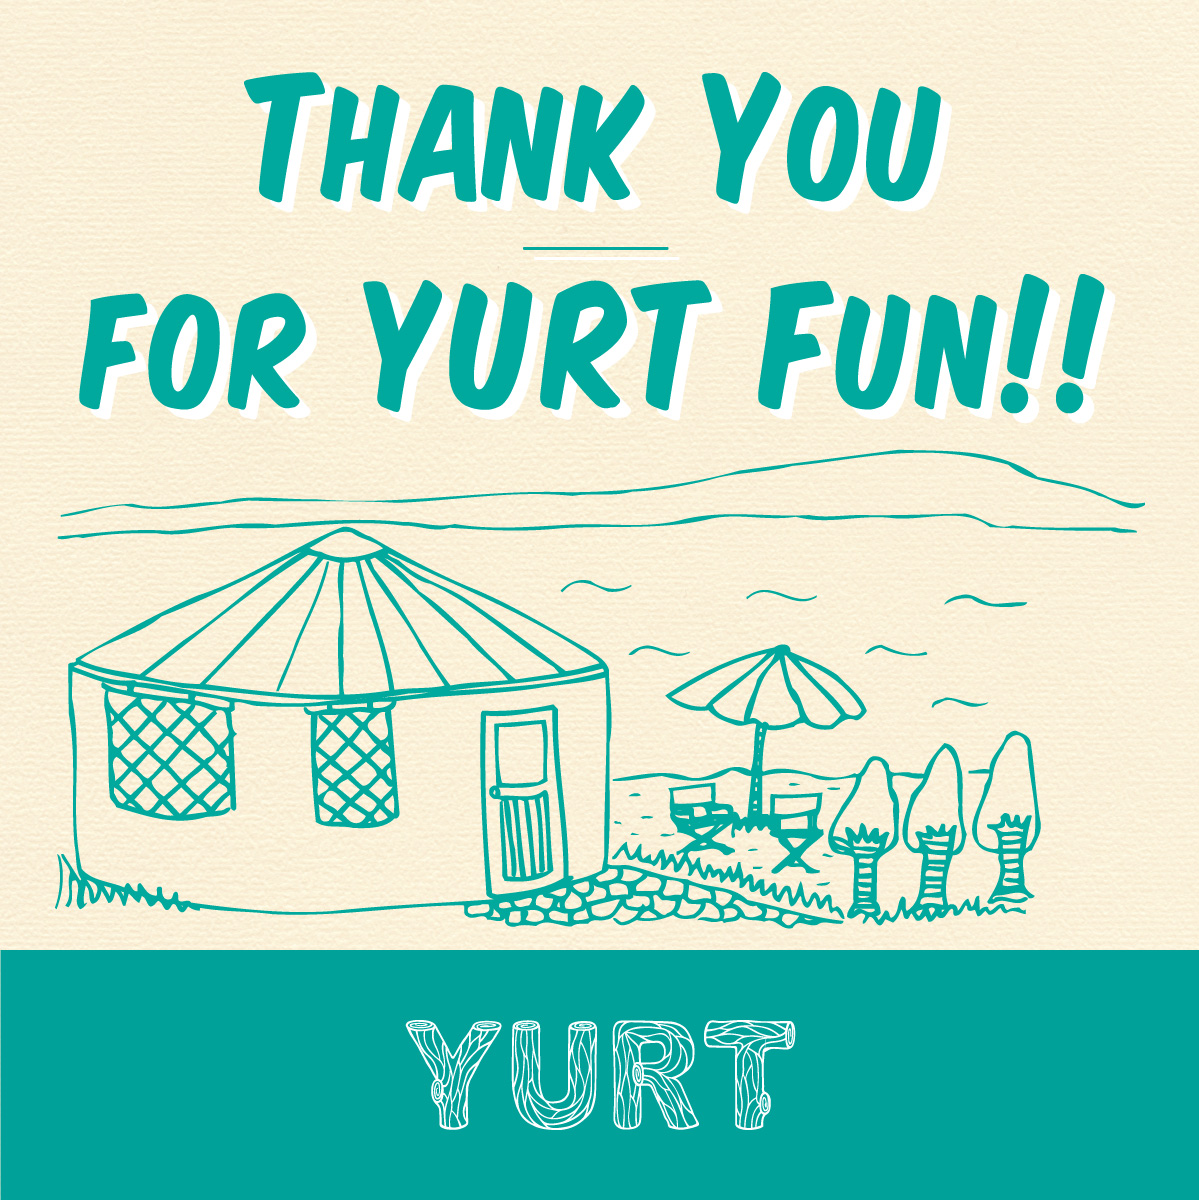 Thank You For Yurt Fun 10年間の ありがとう をお届けします 神戸 旧居留地のカフェ Yurt神戸店 は 10月26日をもって閉店します News Potomak Co Ltd